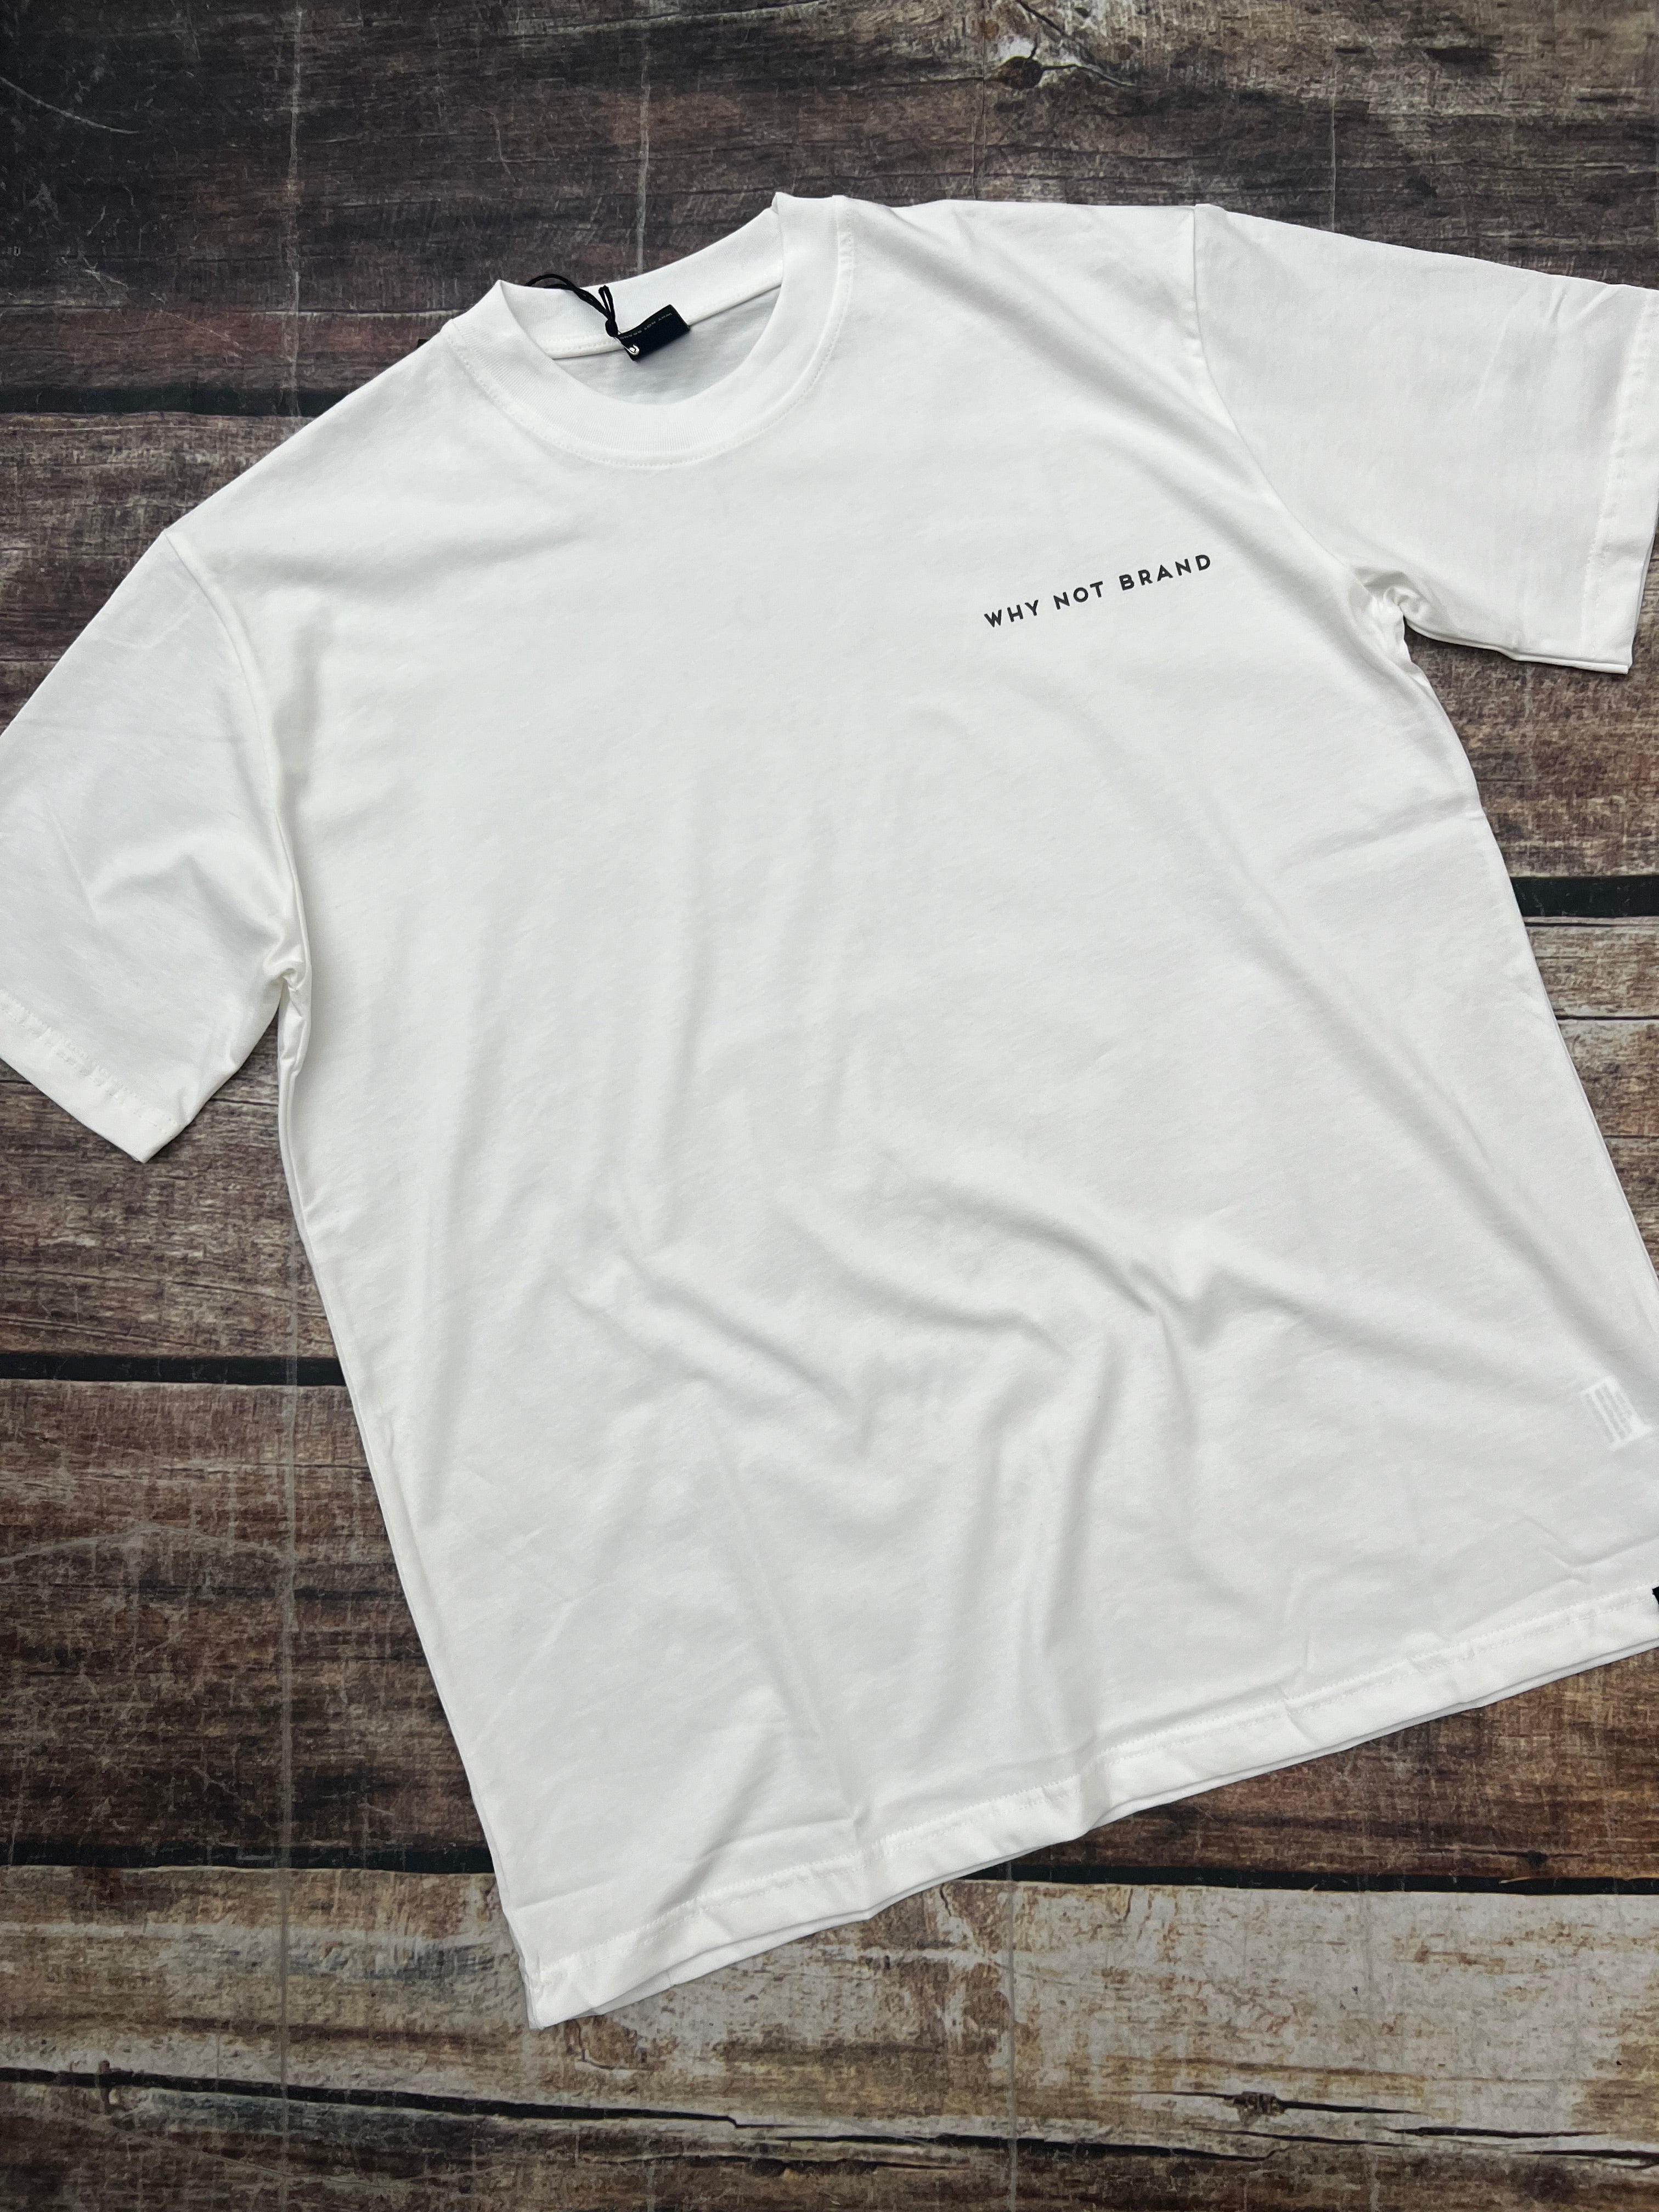 T-shirt Over Why Not Brand Tee Loveless Panna (8880831594836)